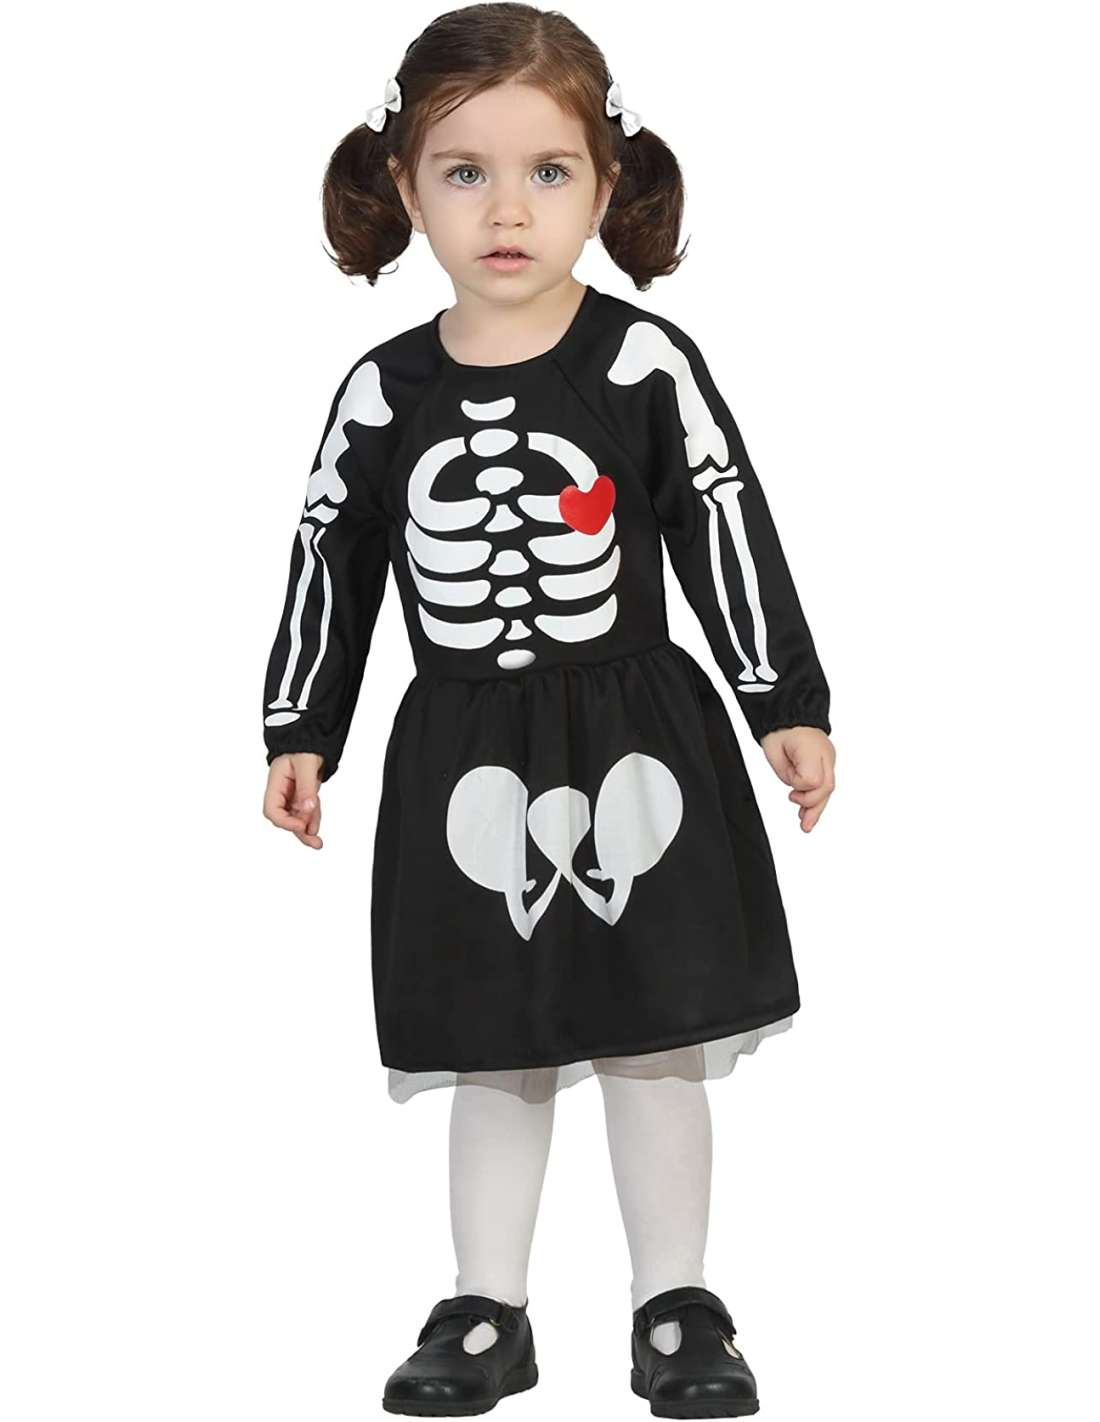 Disfraz Esqueleto Bebé Cotton 0-6 Meses con Ofertas en Carrefour